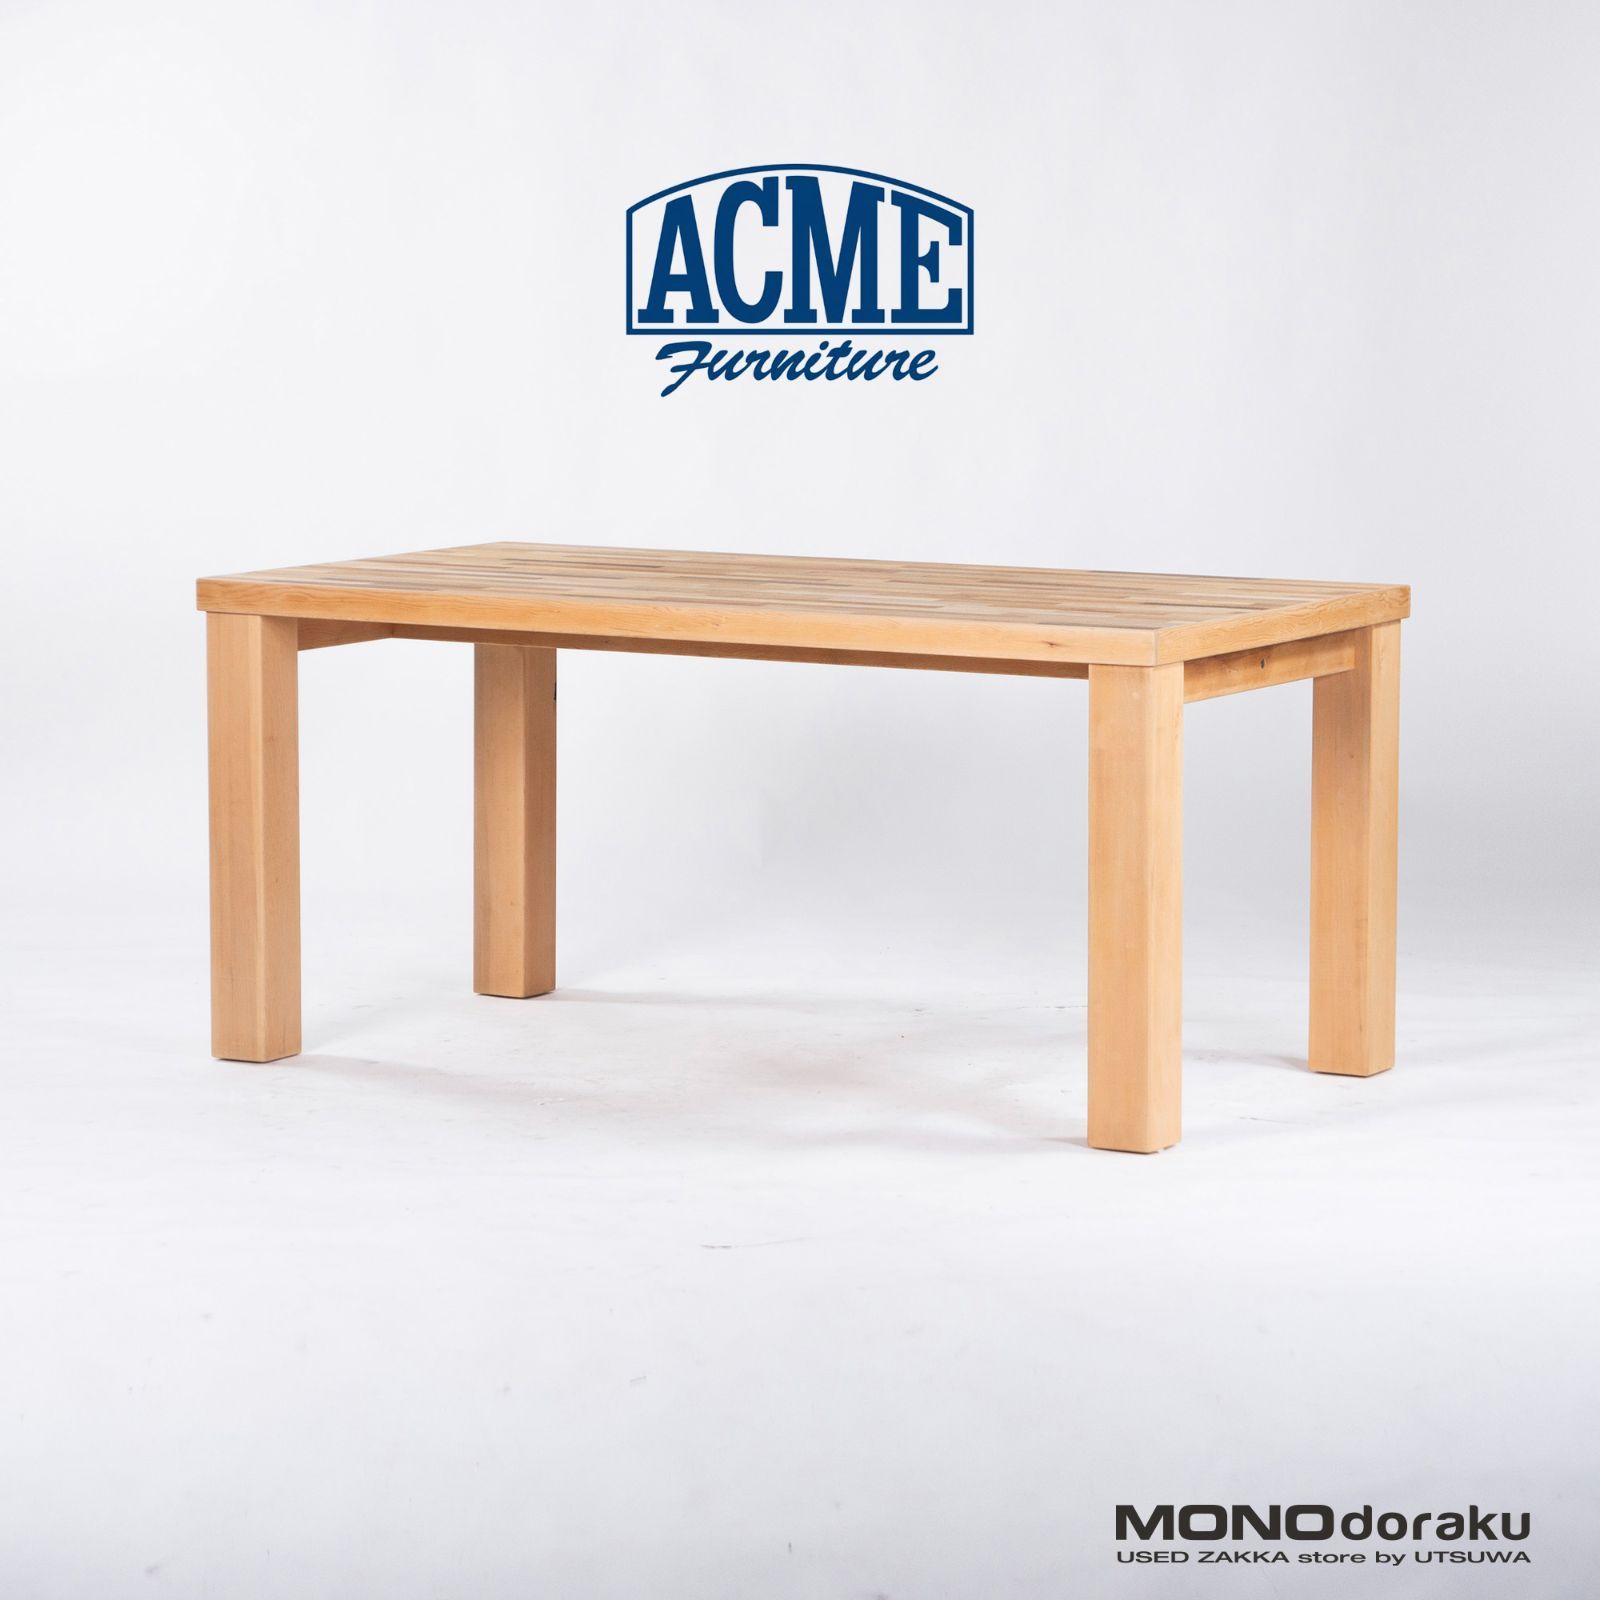 日本安心● アクメファニチャー ACME Furniture バンクチェア BANK CHAIR ダイニングチェア ラバーウッド USビンテージスタイル 定価￥34100- B ダイニングチェア